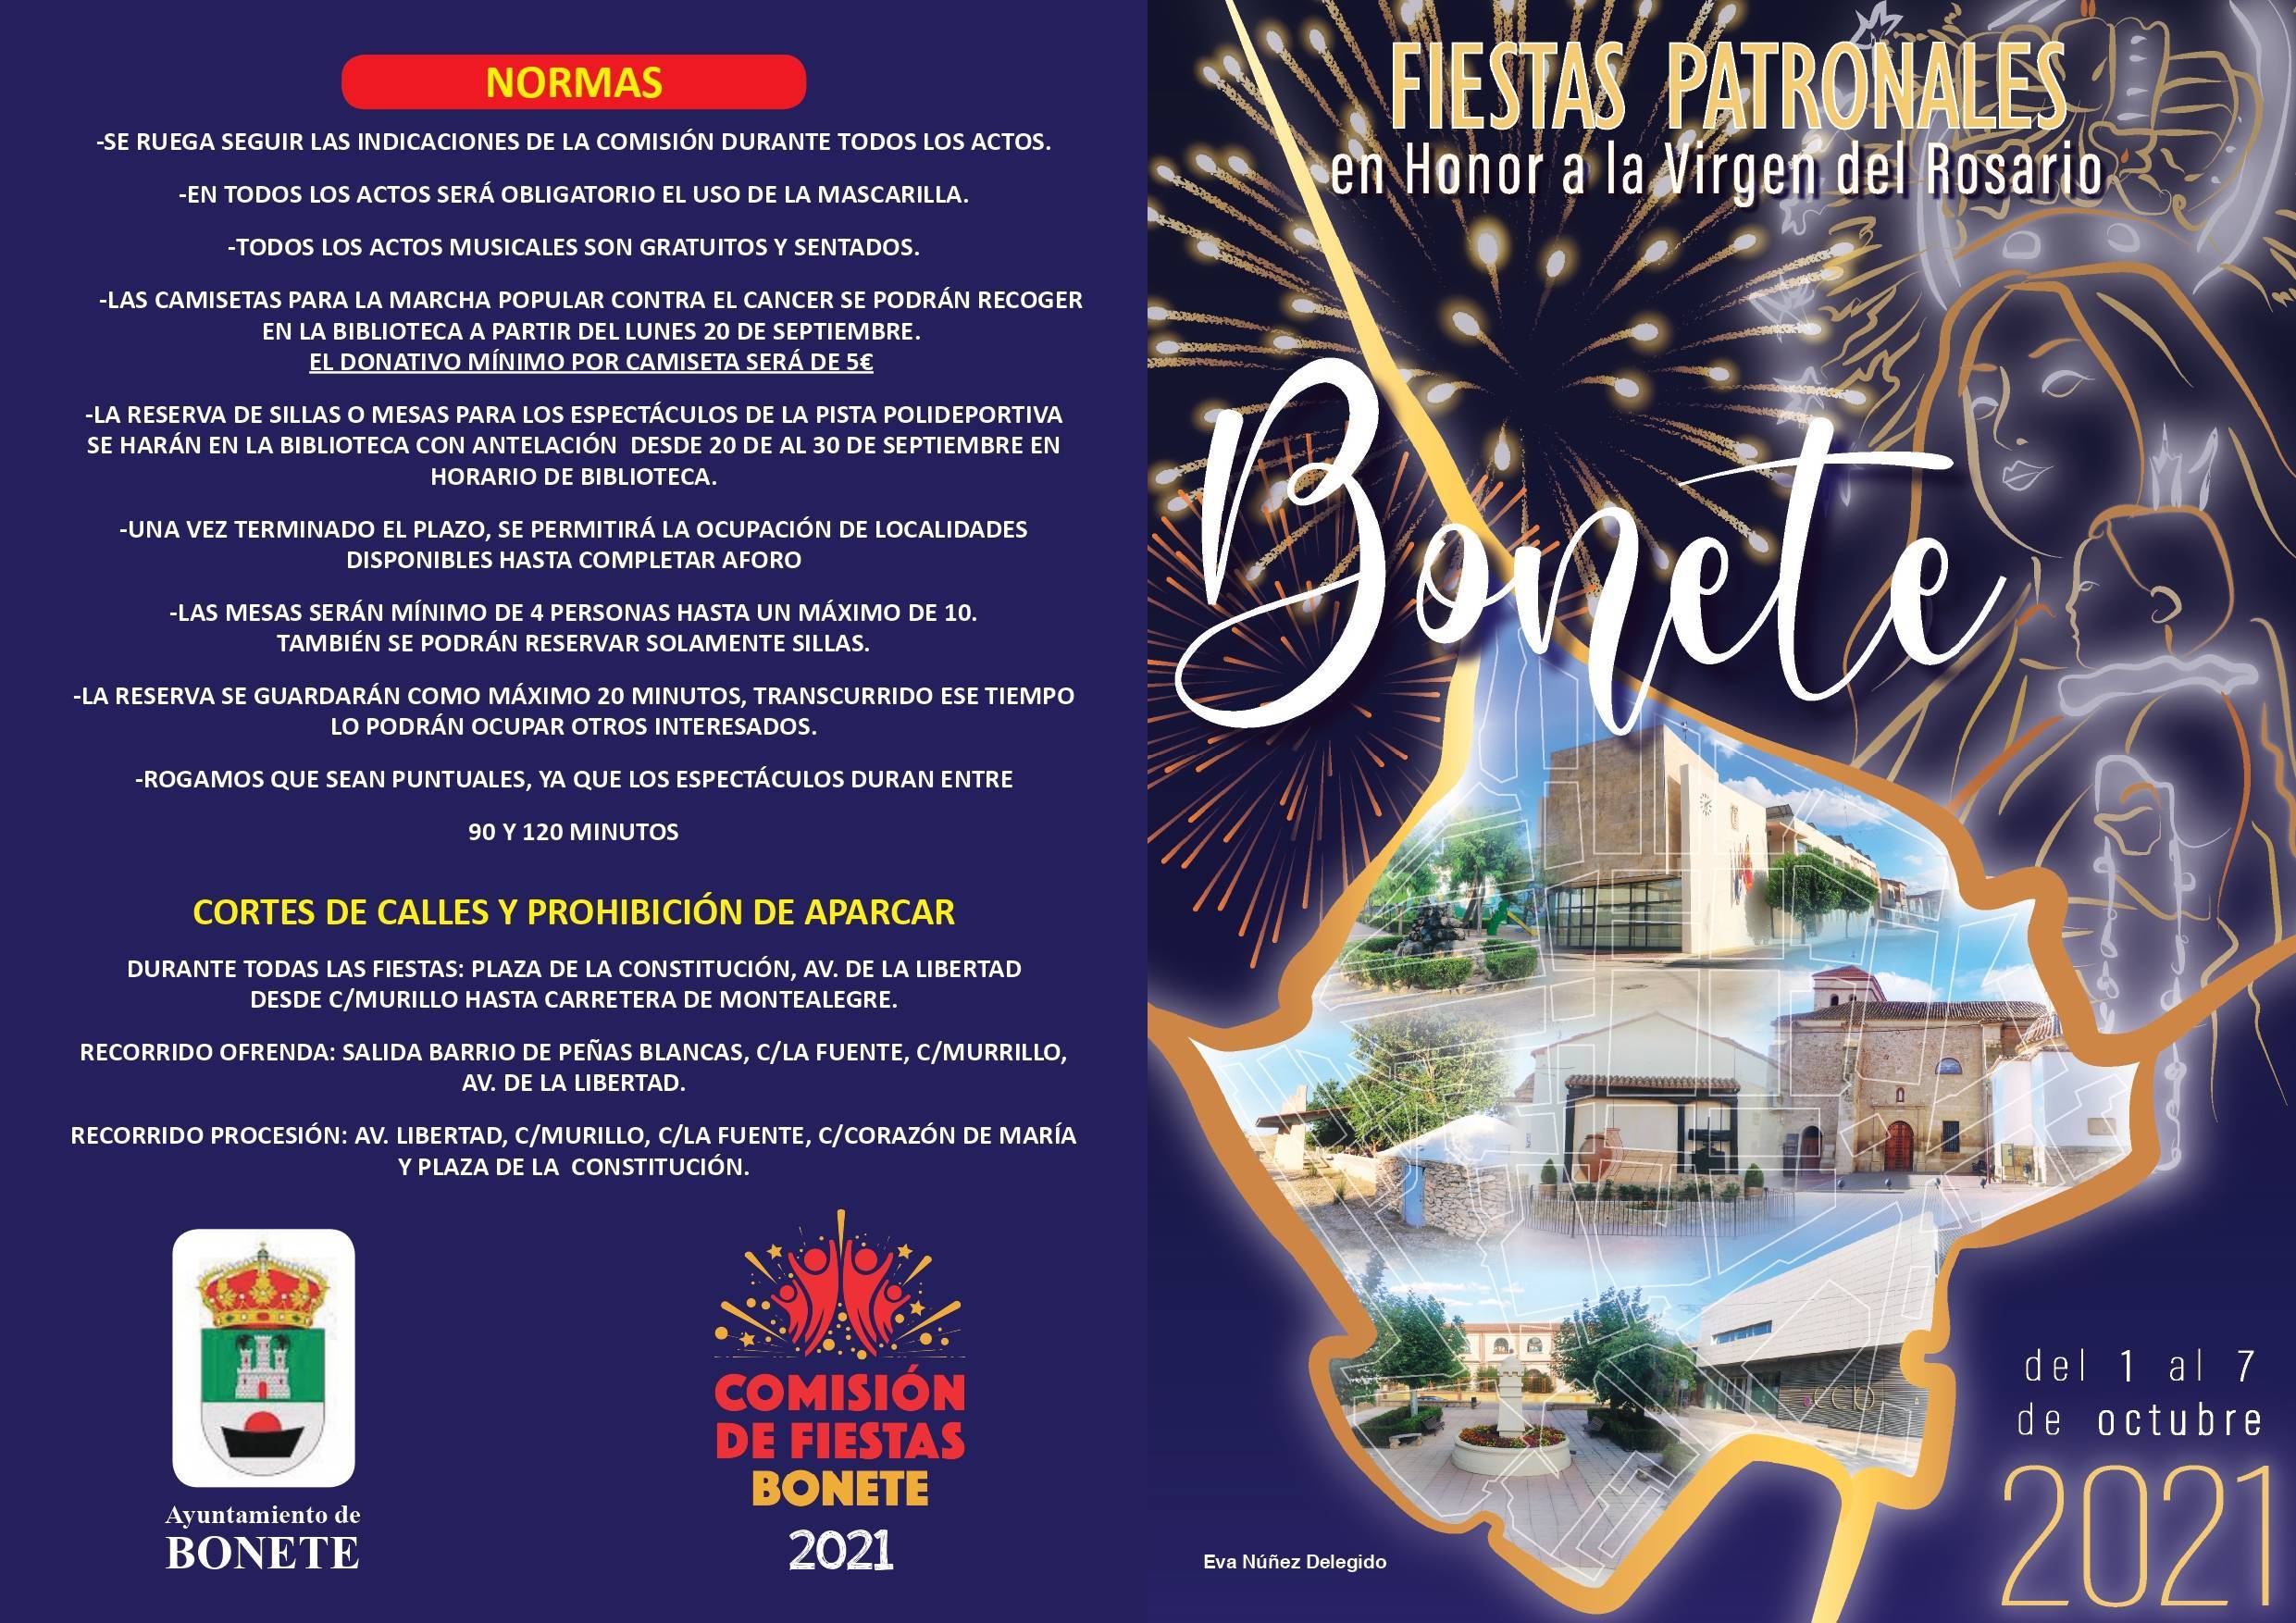 Fiestas patronales en honor a la Virgen del Rosario (2021) - Bonete (Albacete) 1